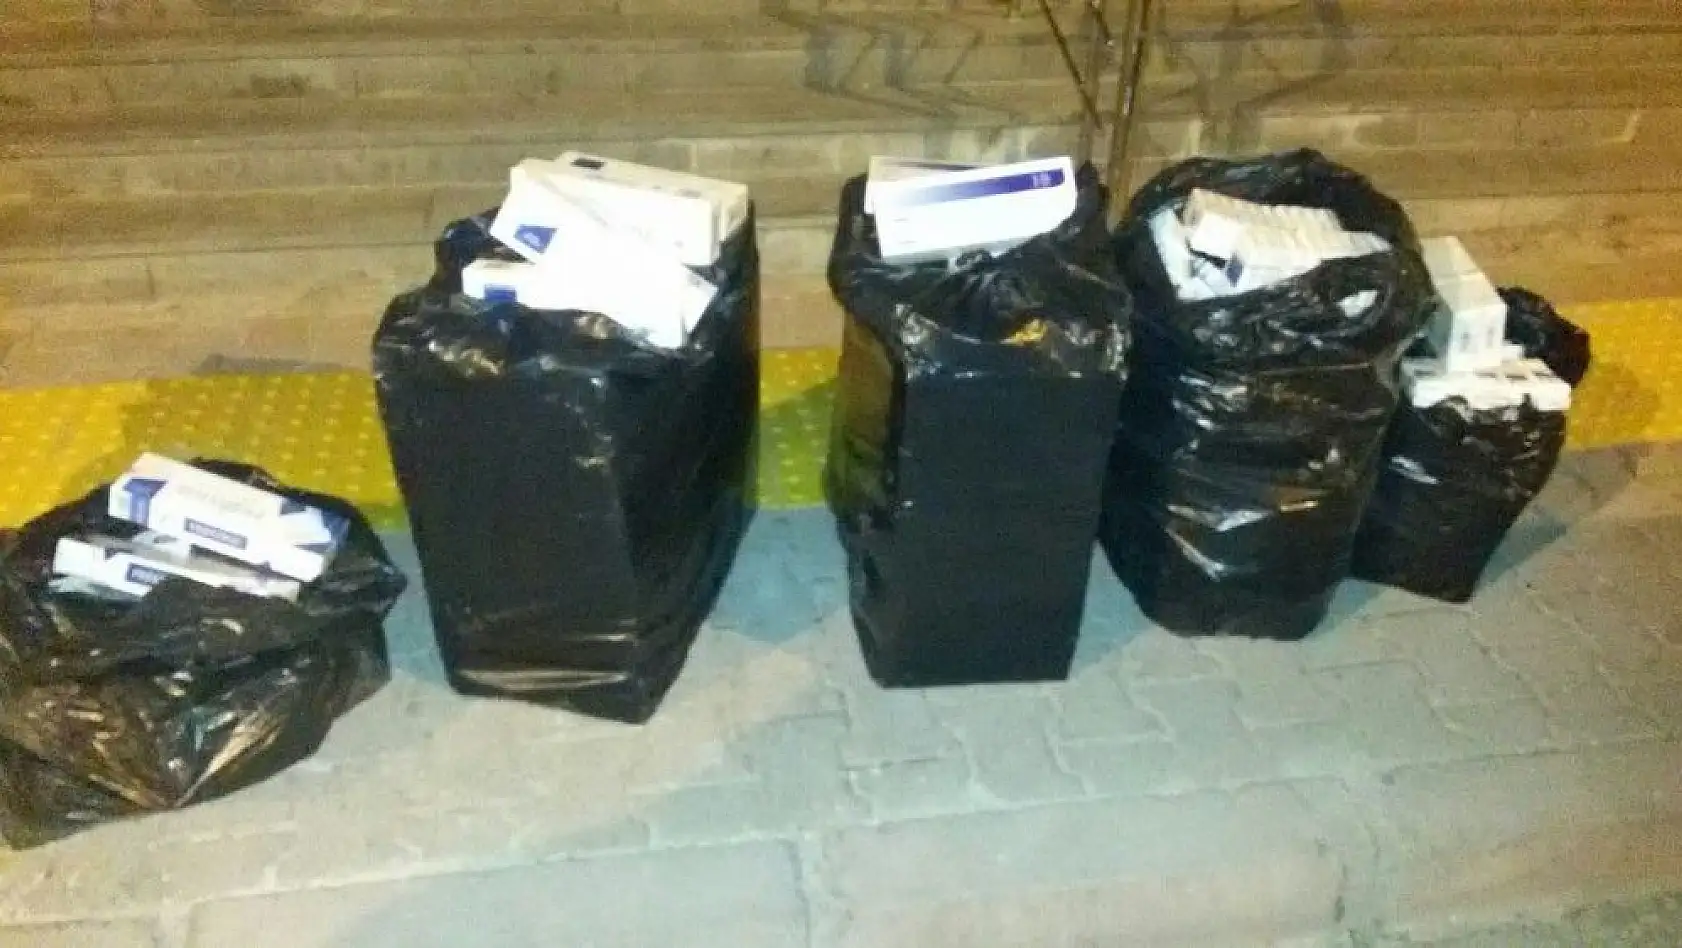 Kayseri'de 15 bin paket gümrük kaçağı sigara ele geçirildi
